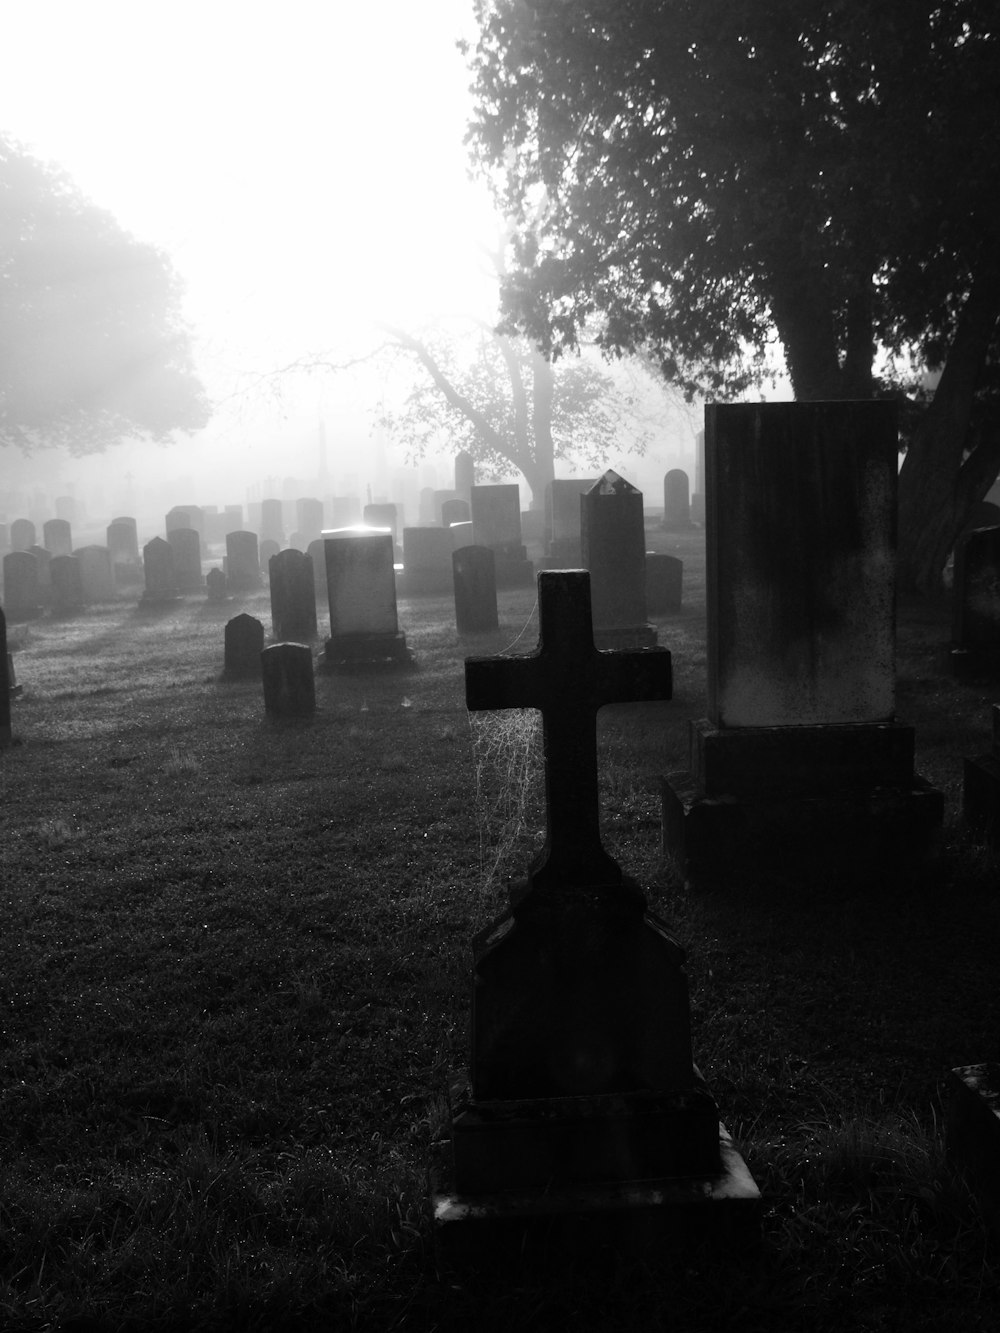 前景に十字架がある霧の墓地